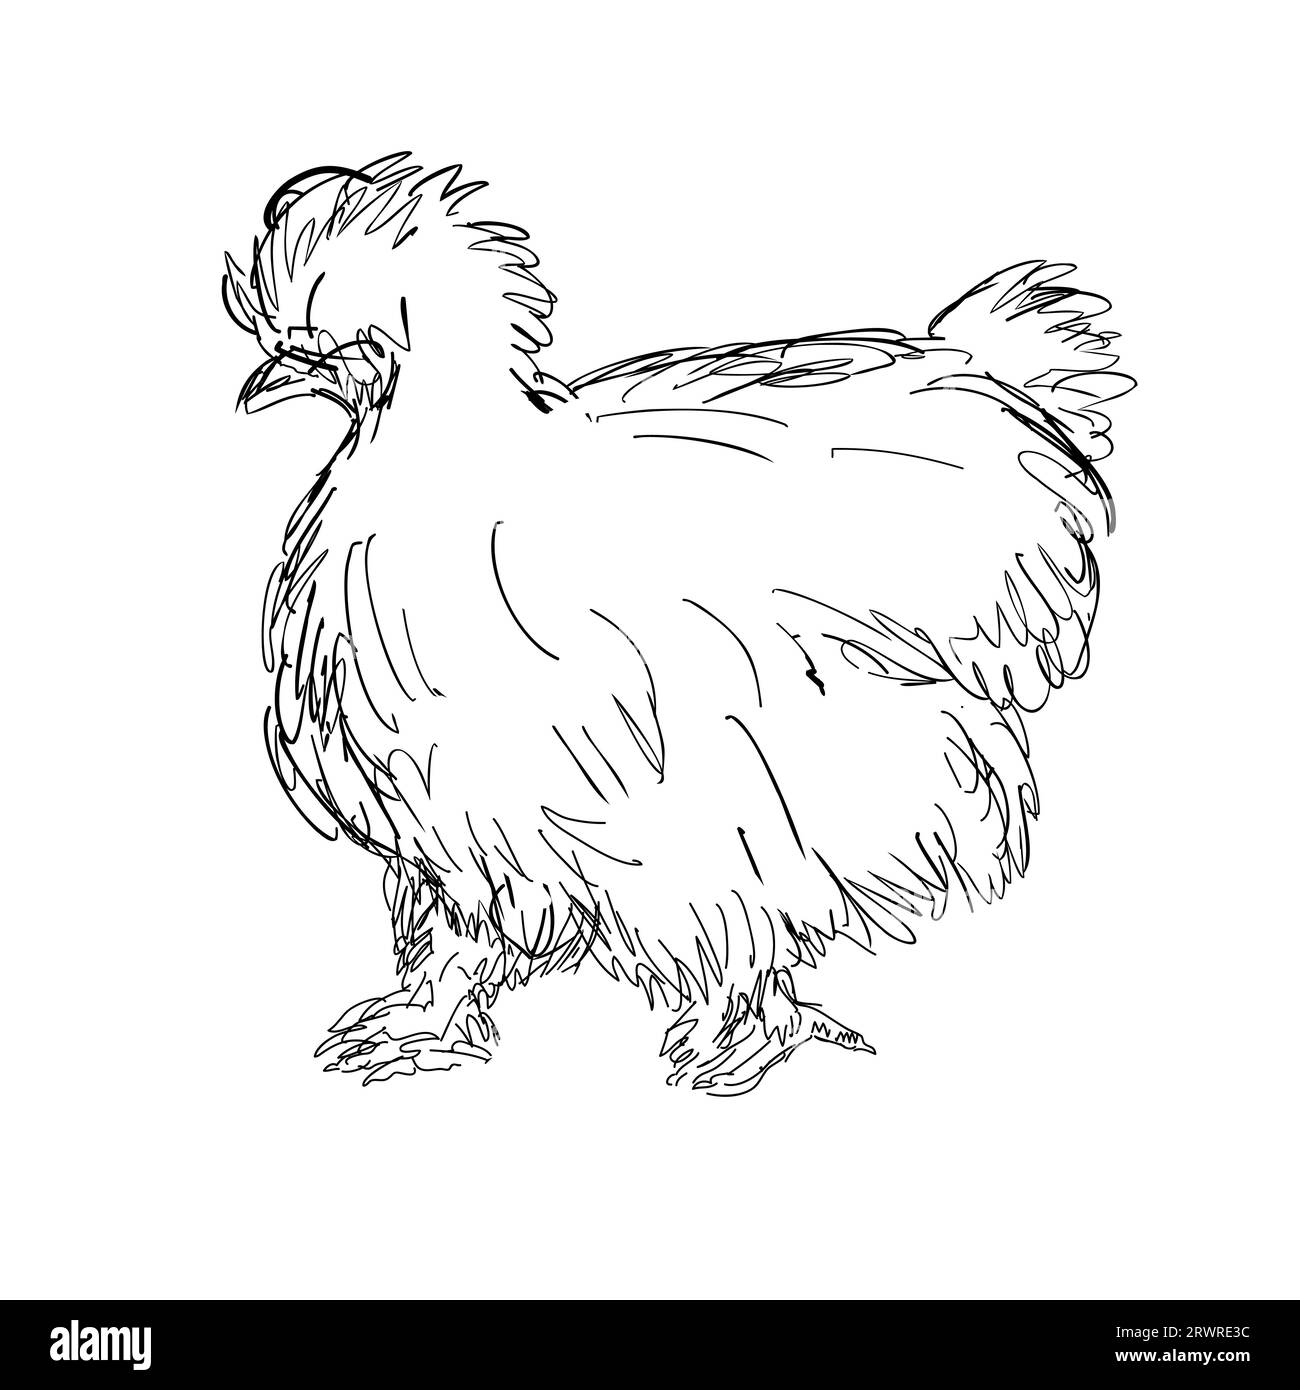 Ilustración de estilo de dibujo de un pollo de seda Silkie, sedoso o chino, una raza bantam de pollo doméstico visto desde el lado hecho en negro y. Foto de stock